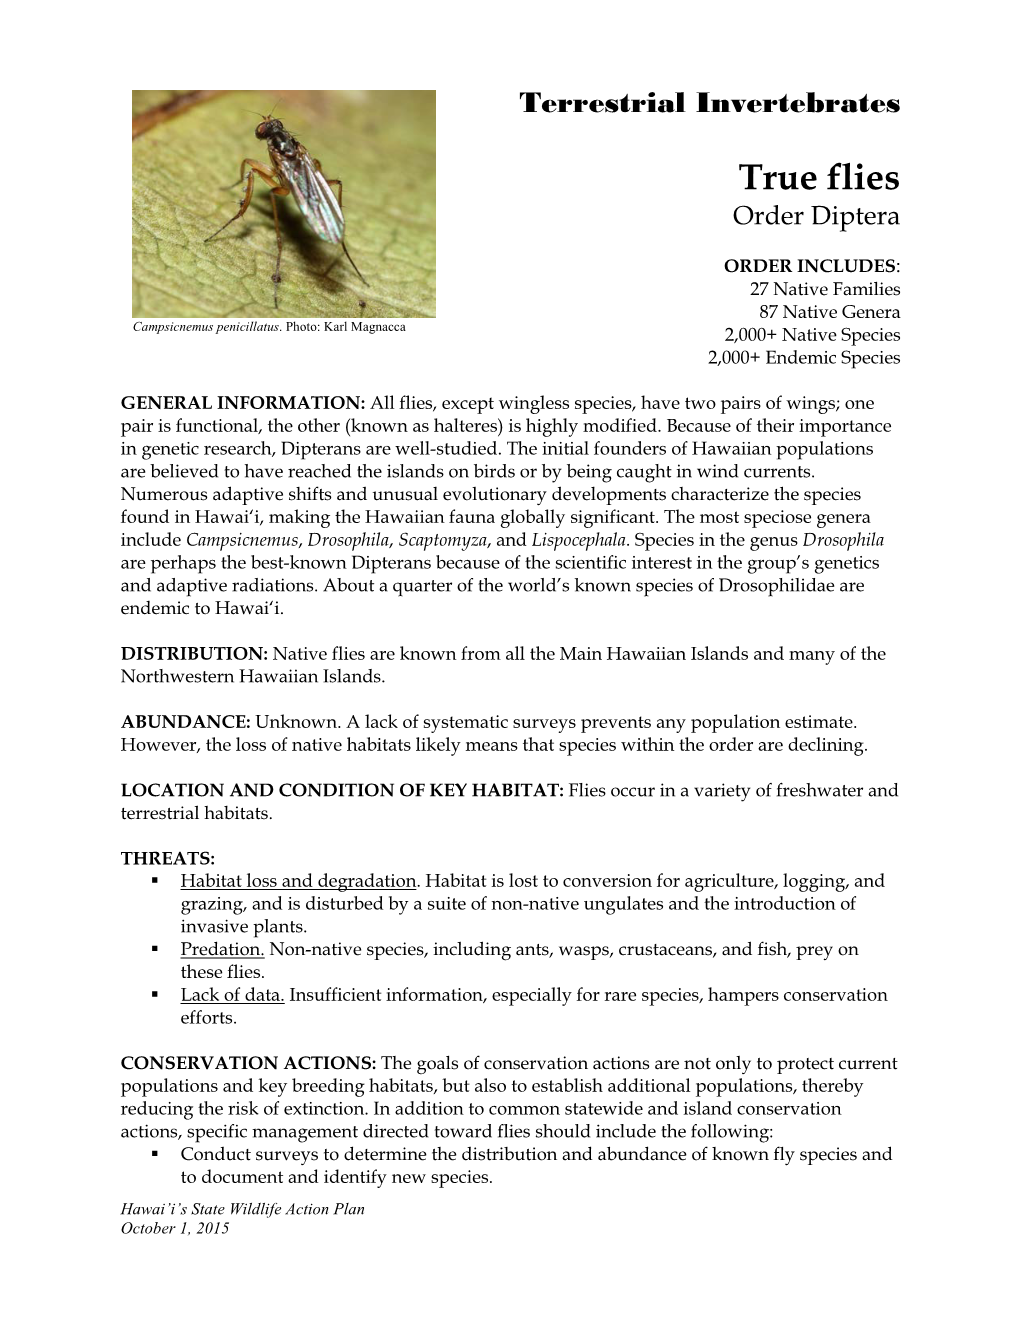 True Flies Order Diptera